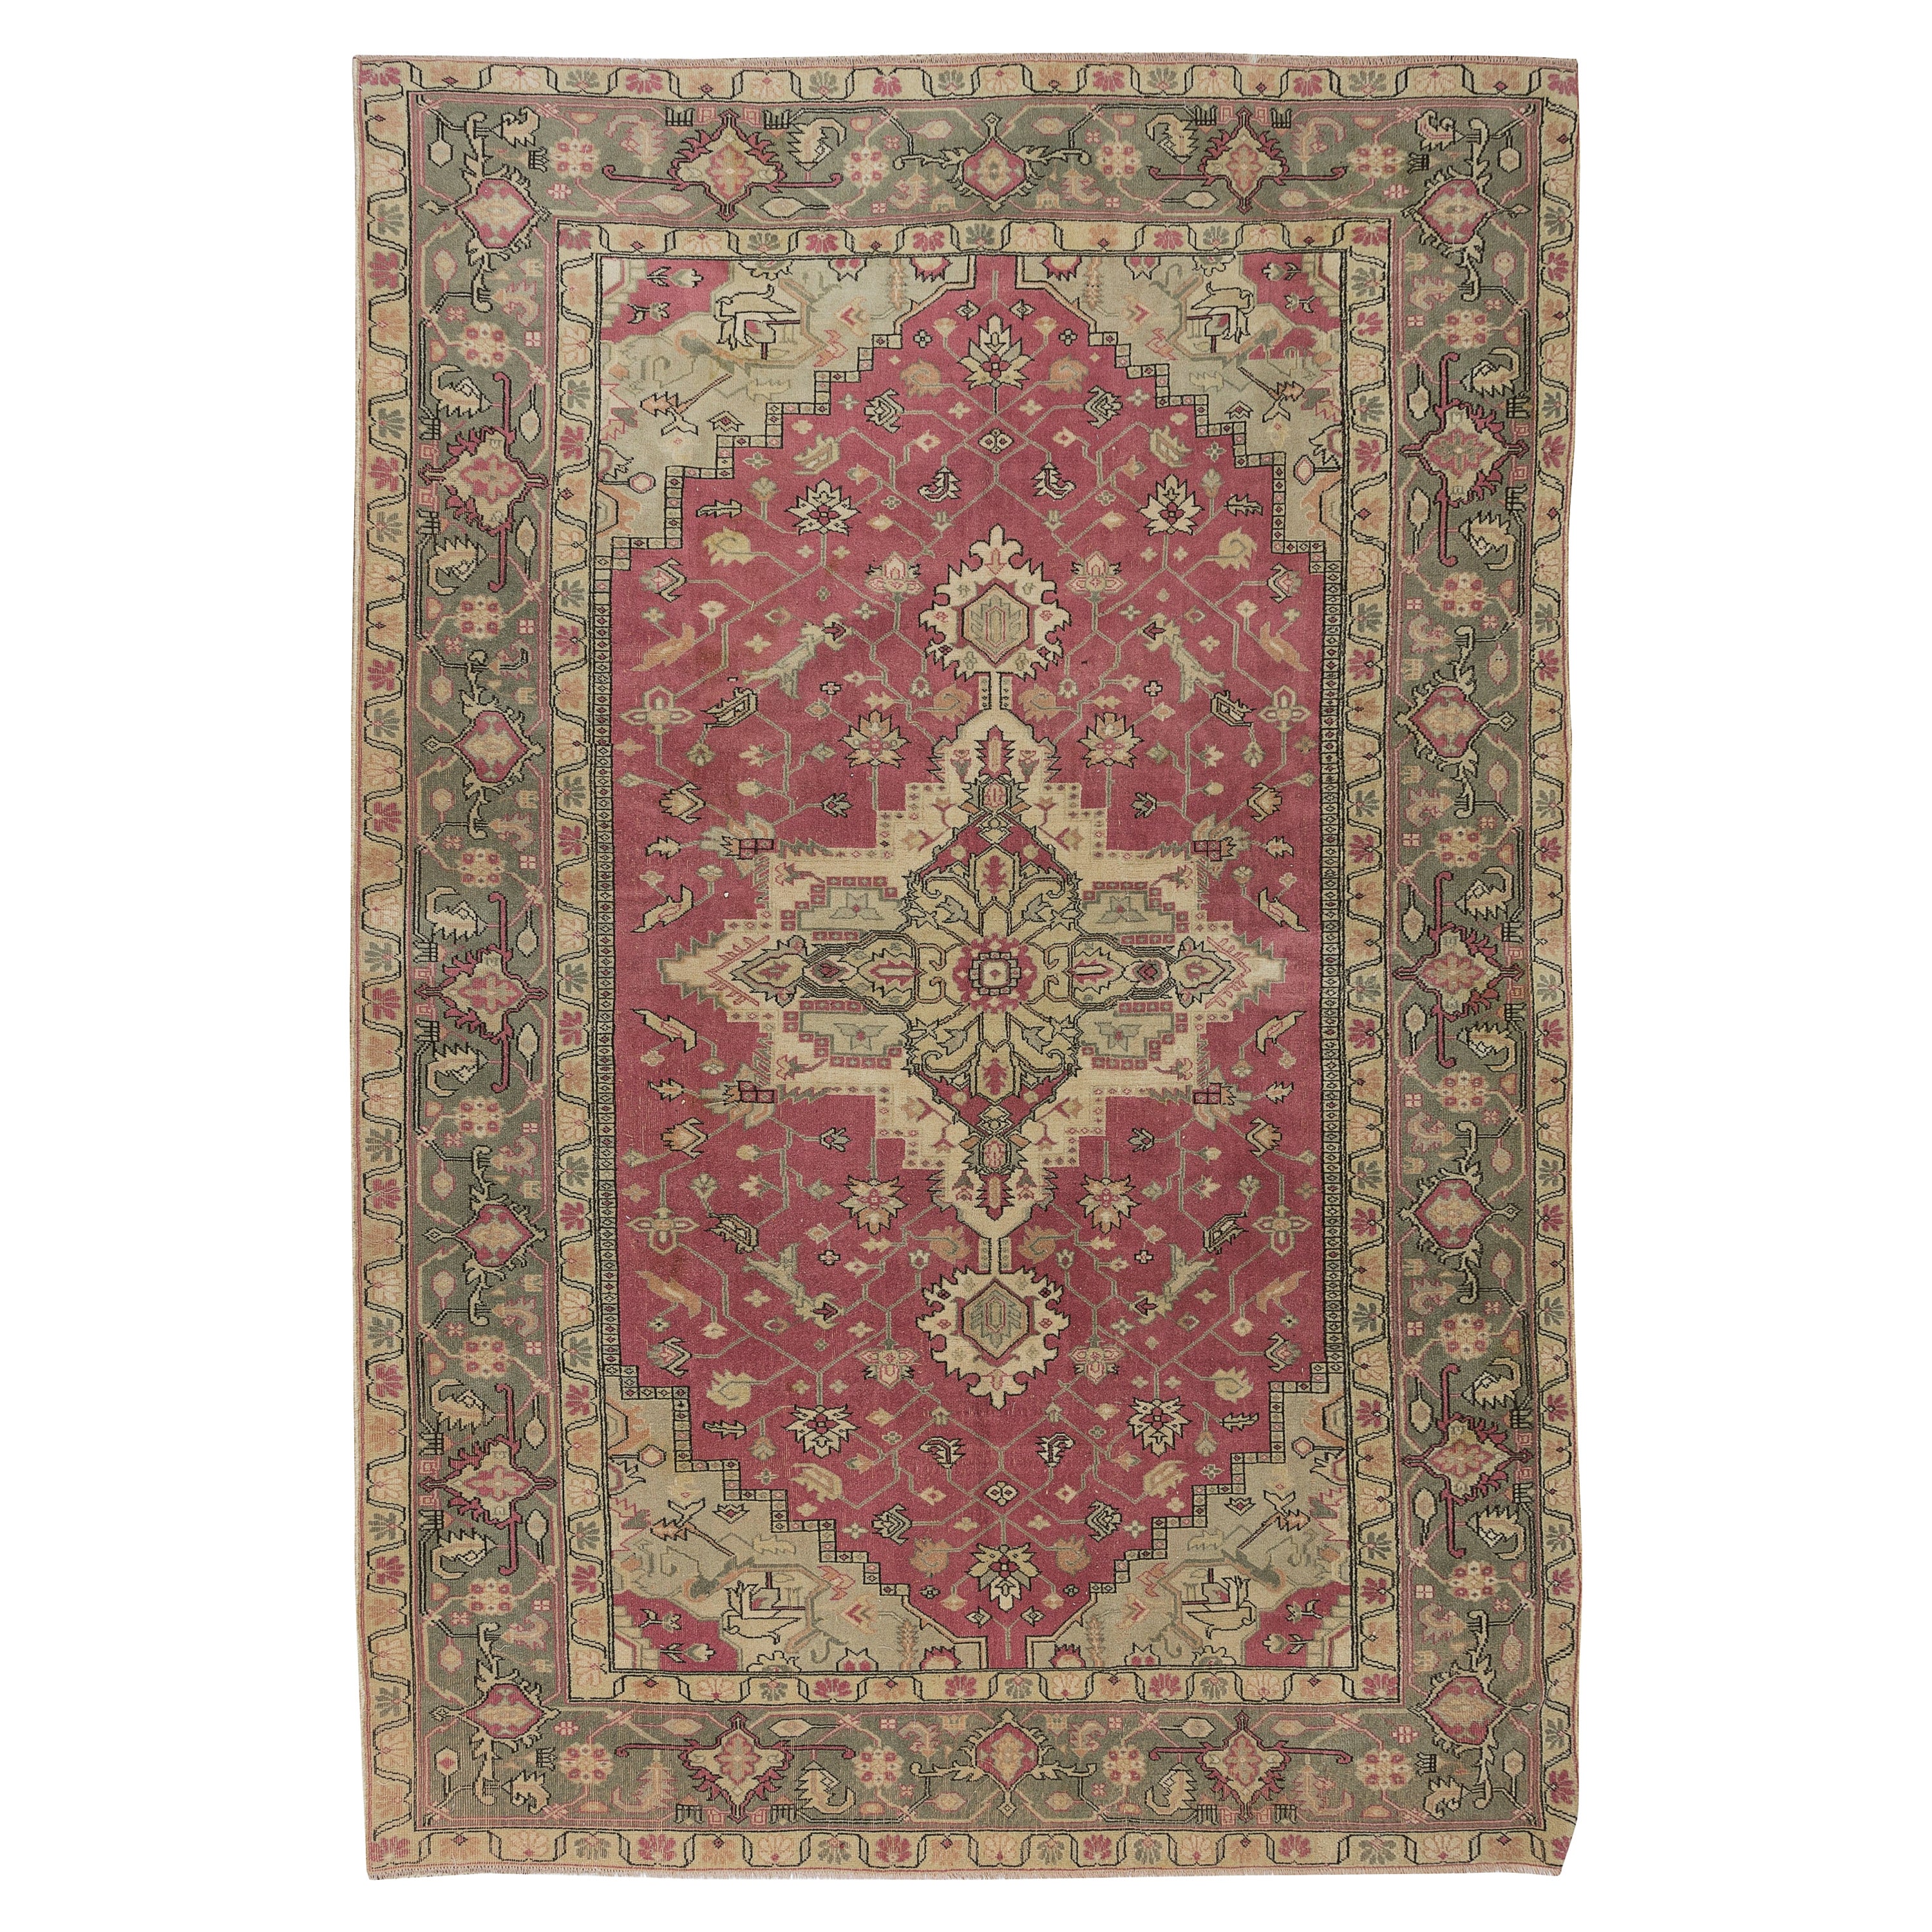 7x10.8 Ft Turkish Handmade Unique Rug, Vintage Carpet with Medallion Design (tapis vintage avec motifs en médaillon)